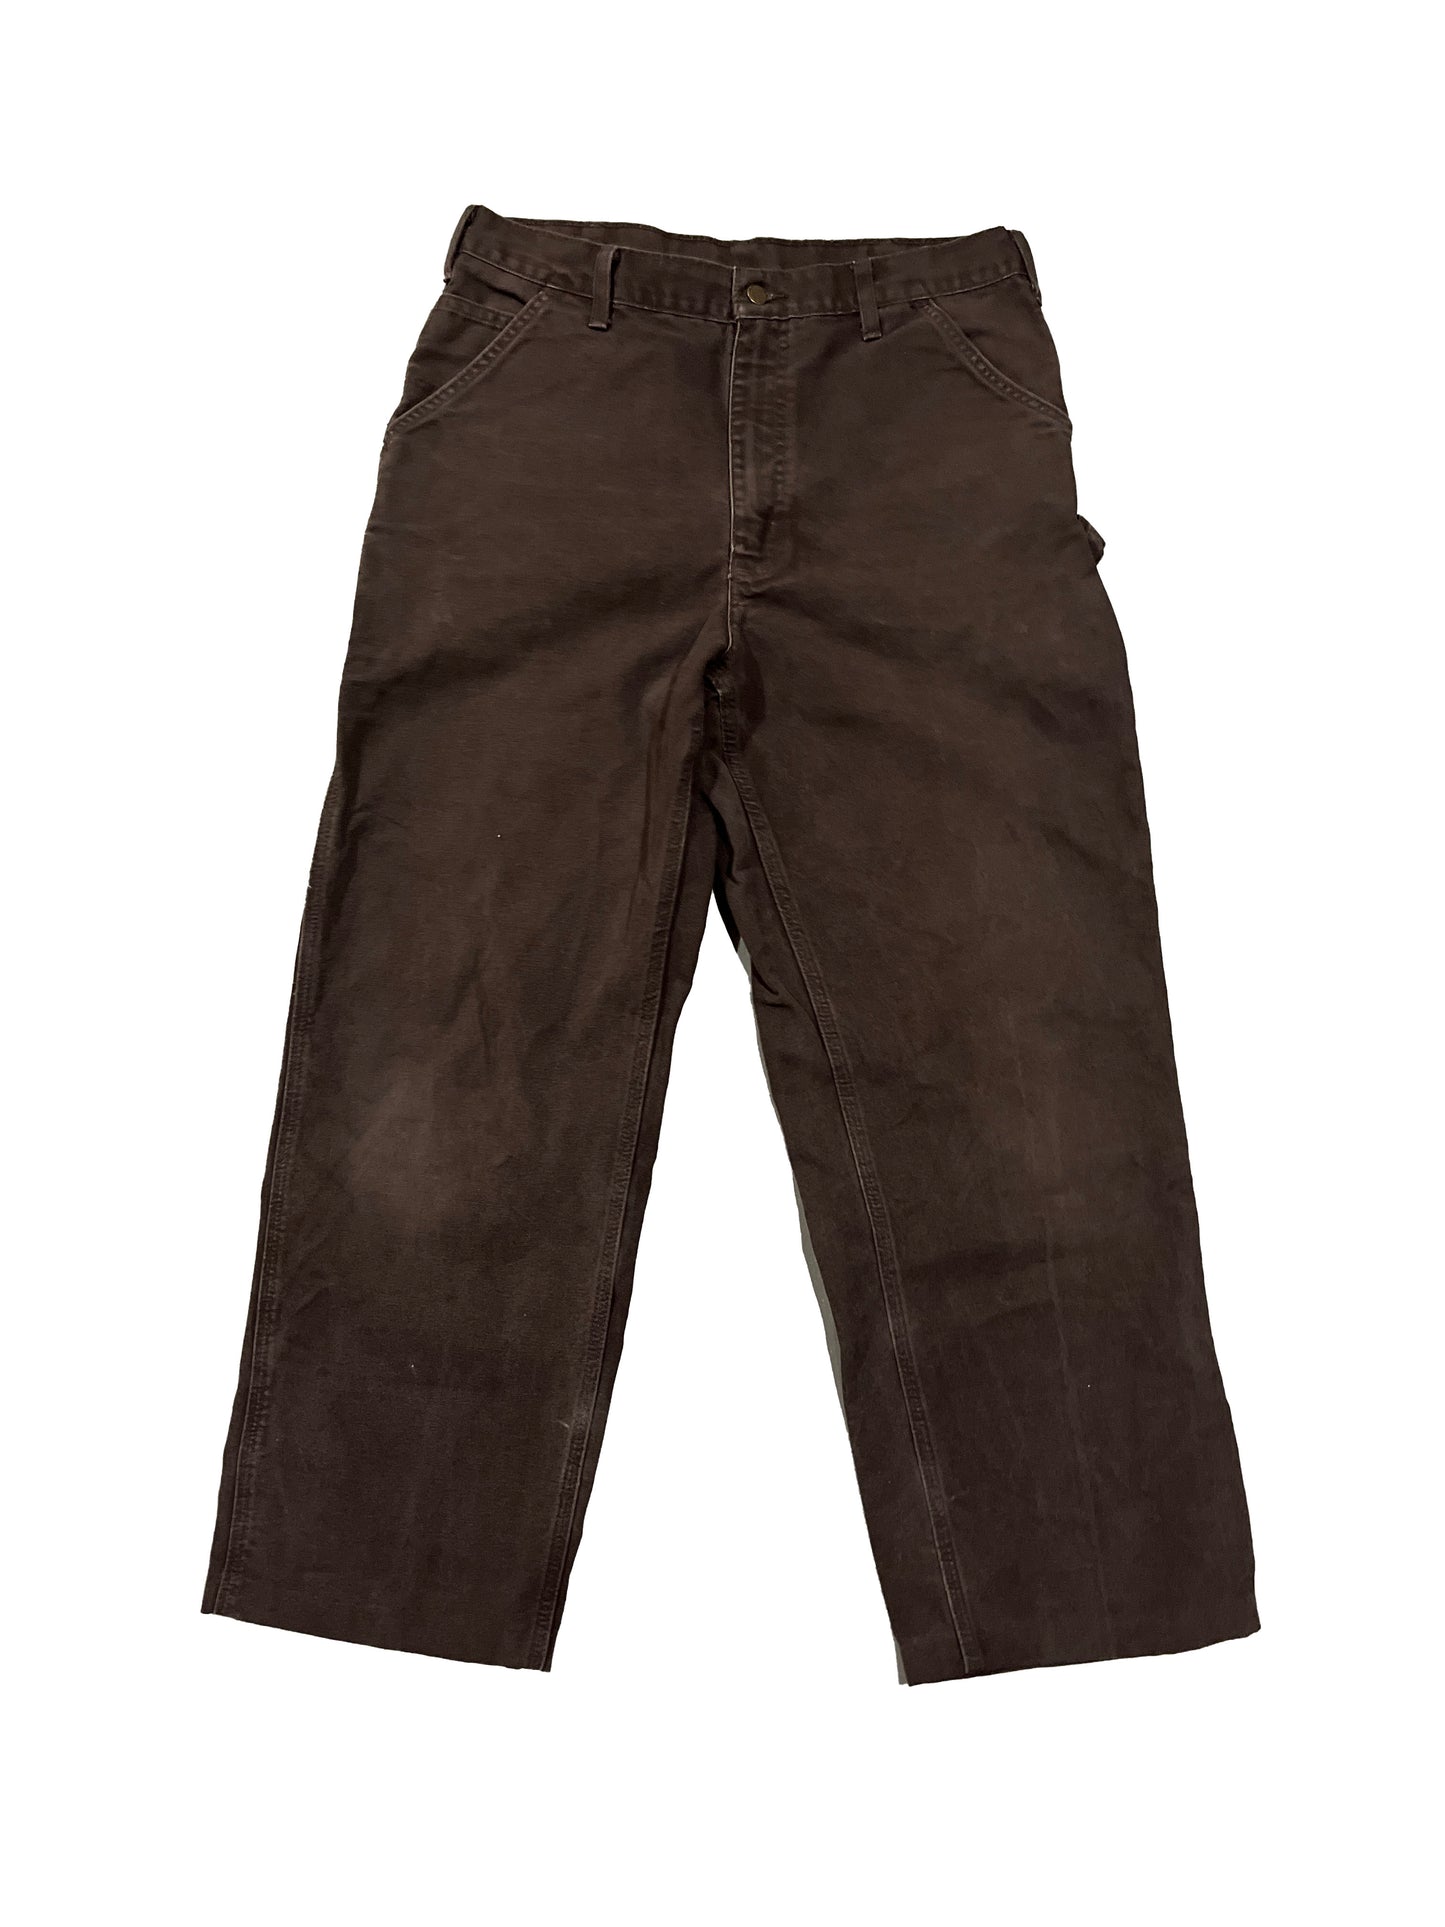 Vintage Carhartt Pants Brown